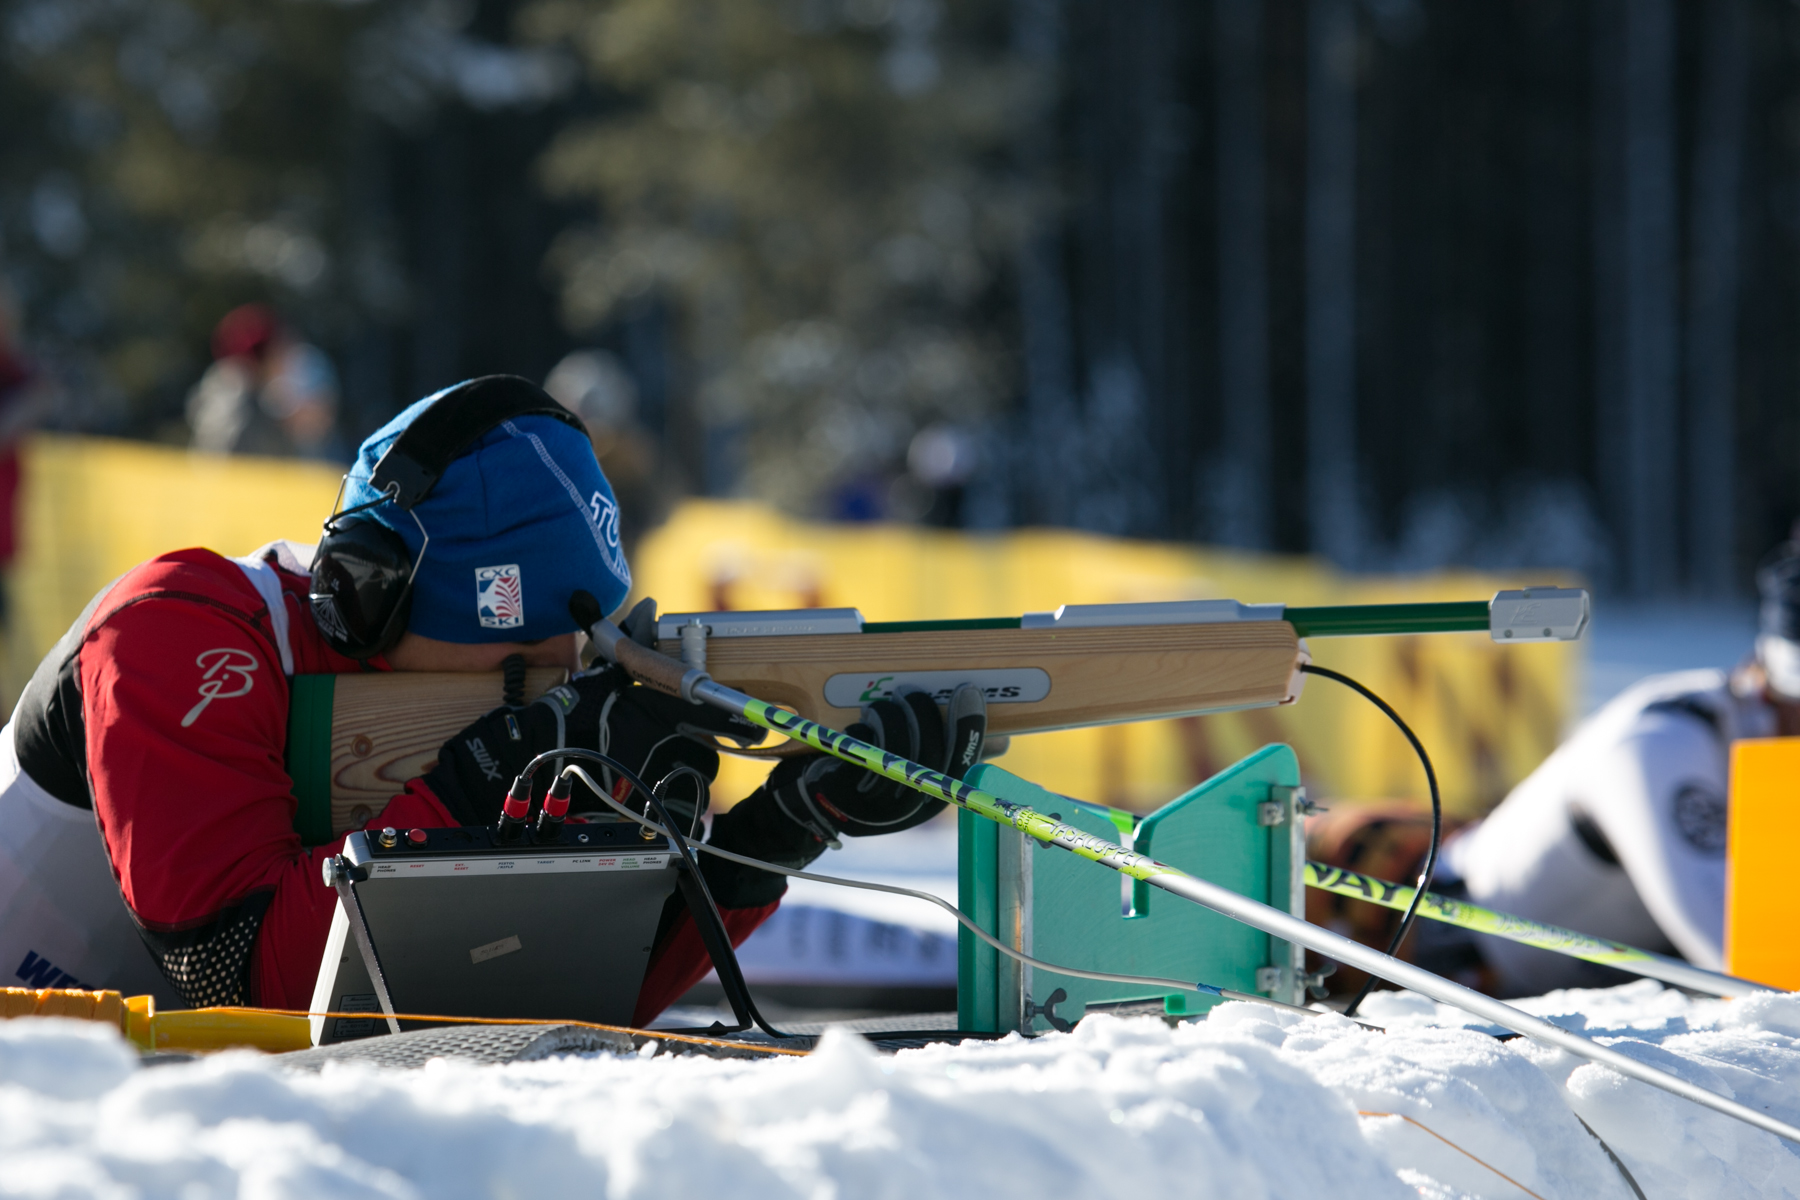 Steve Baskis shooting an audio rifle during a biathlon race